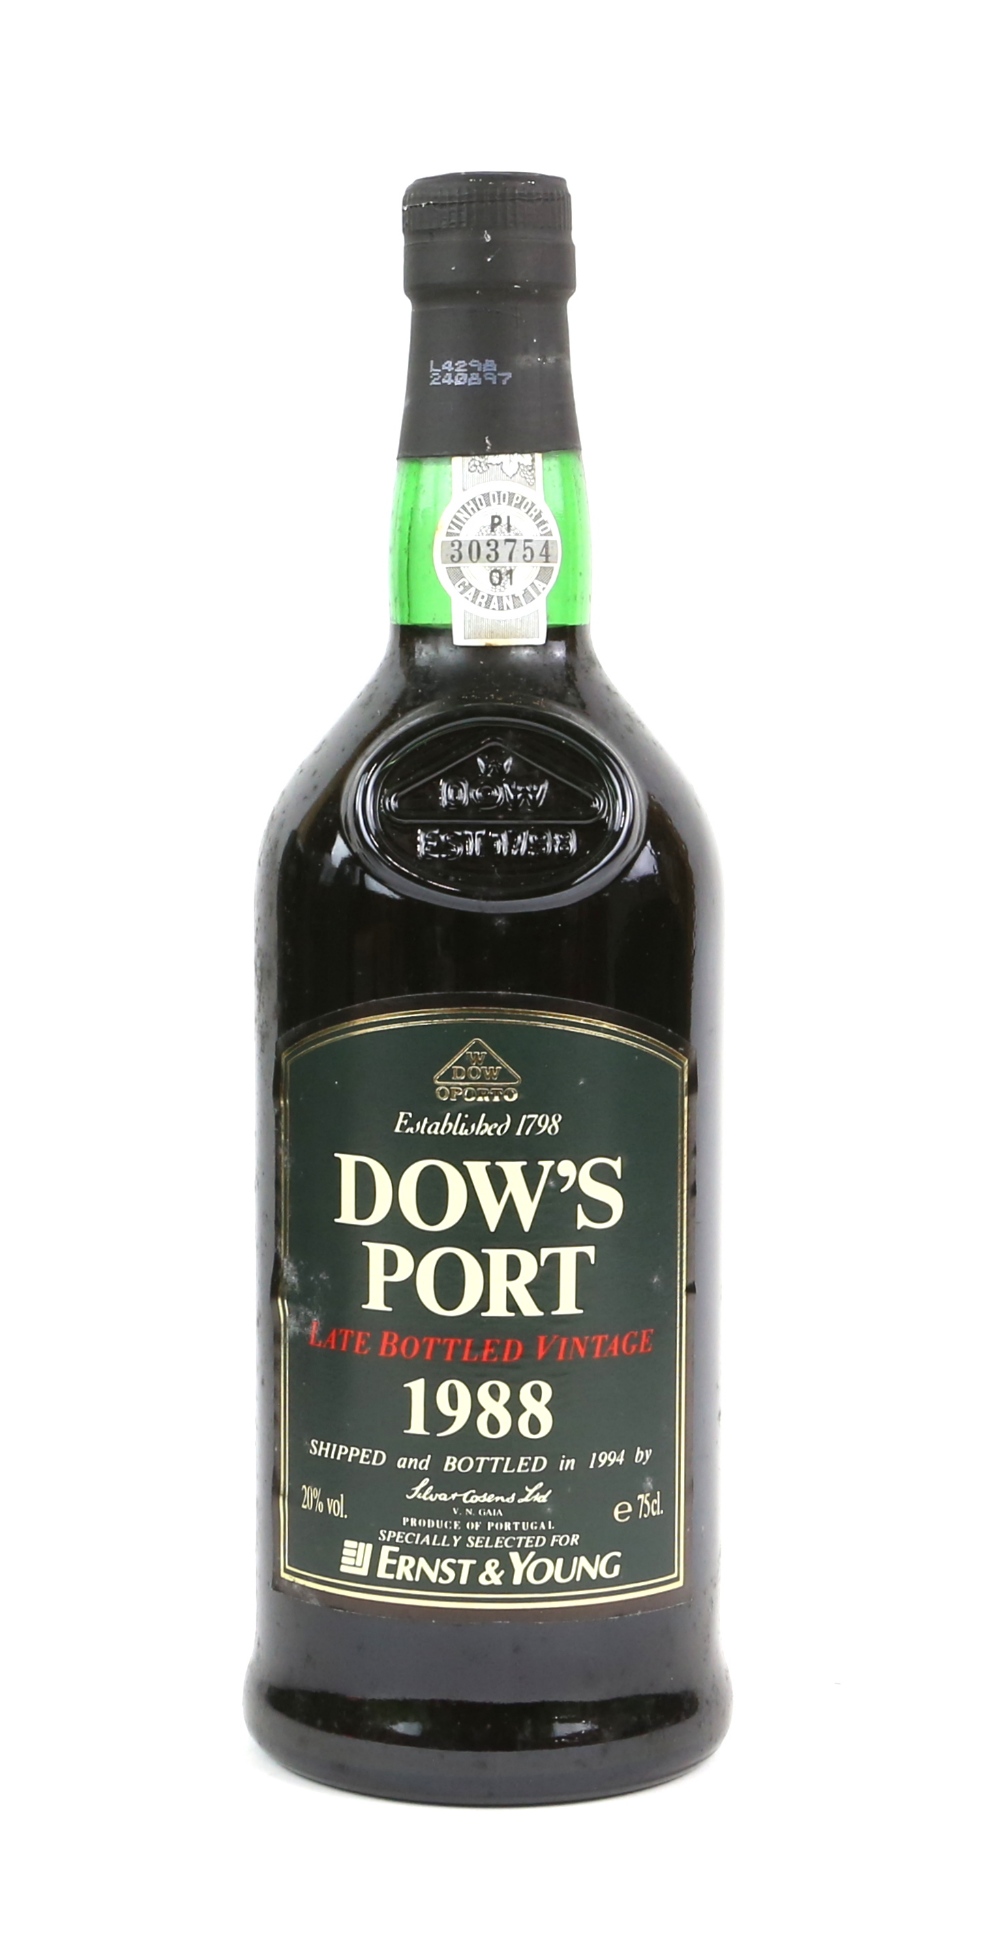 Five bottles of Dow's Port Late Bottled Vintage, 1988 vintage, bottled in 1994. Produced and - Image 2 of 5